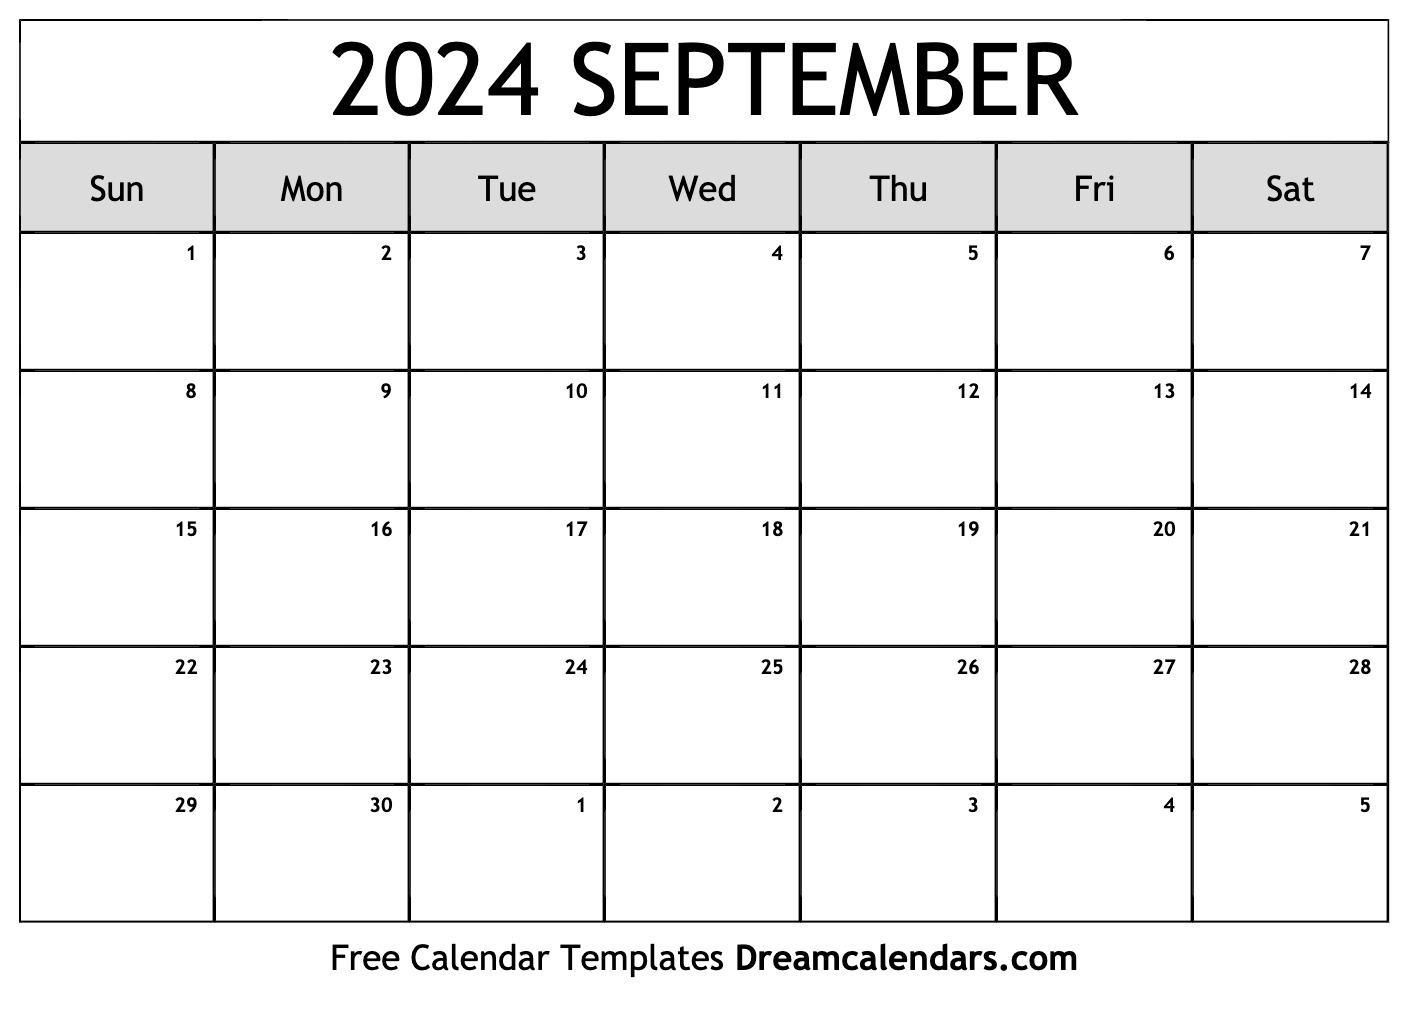 Downloadable Calendar September 2024 Leia Shauna - Free Printable 2024 Calendar September 24calendars